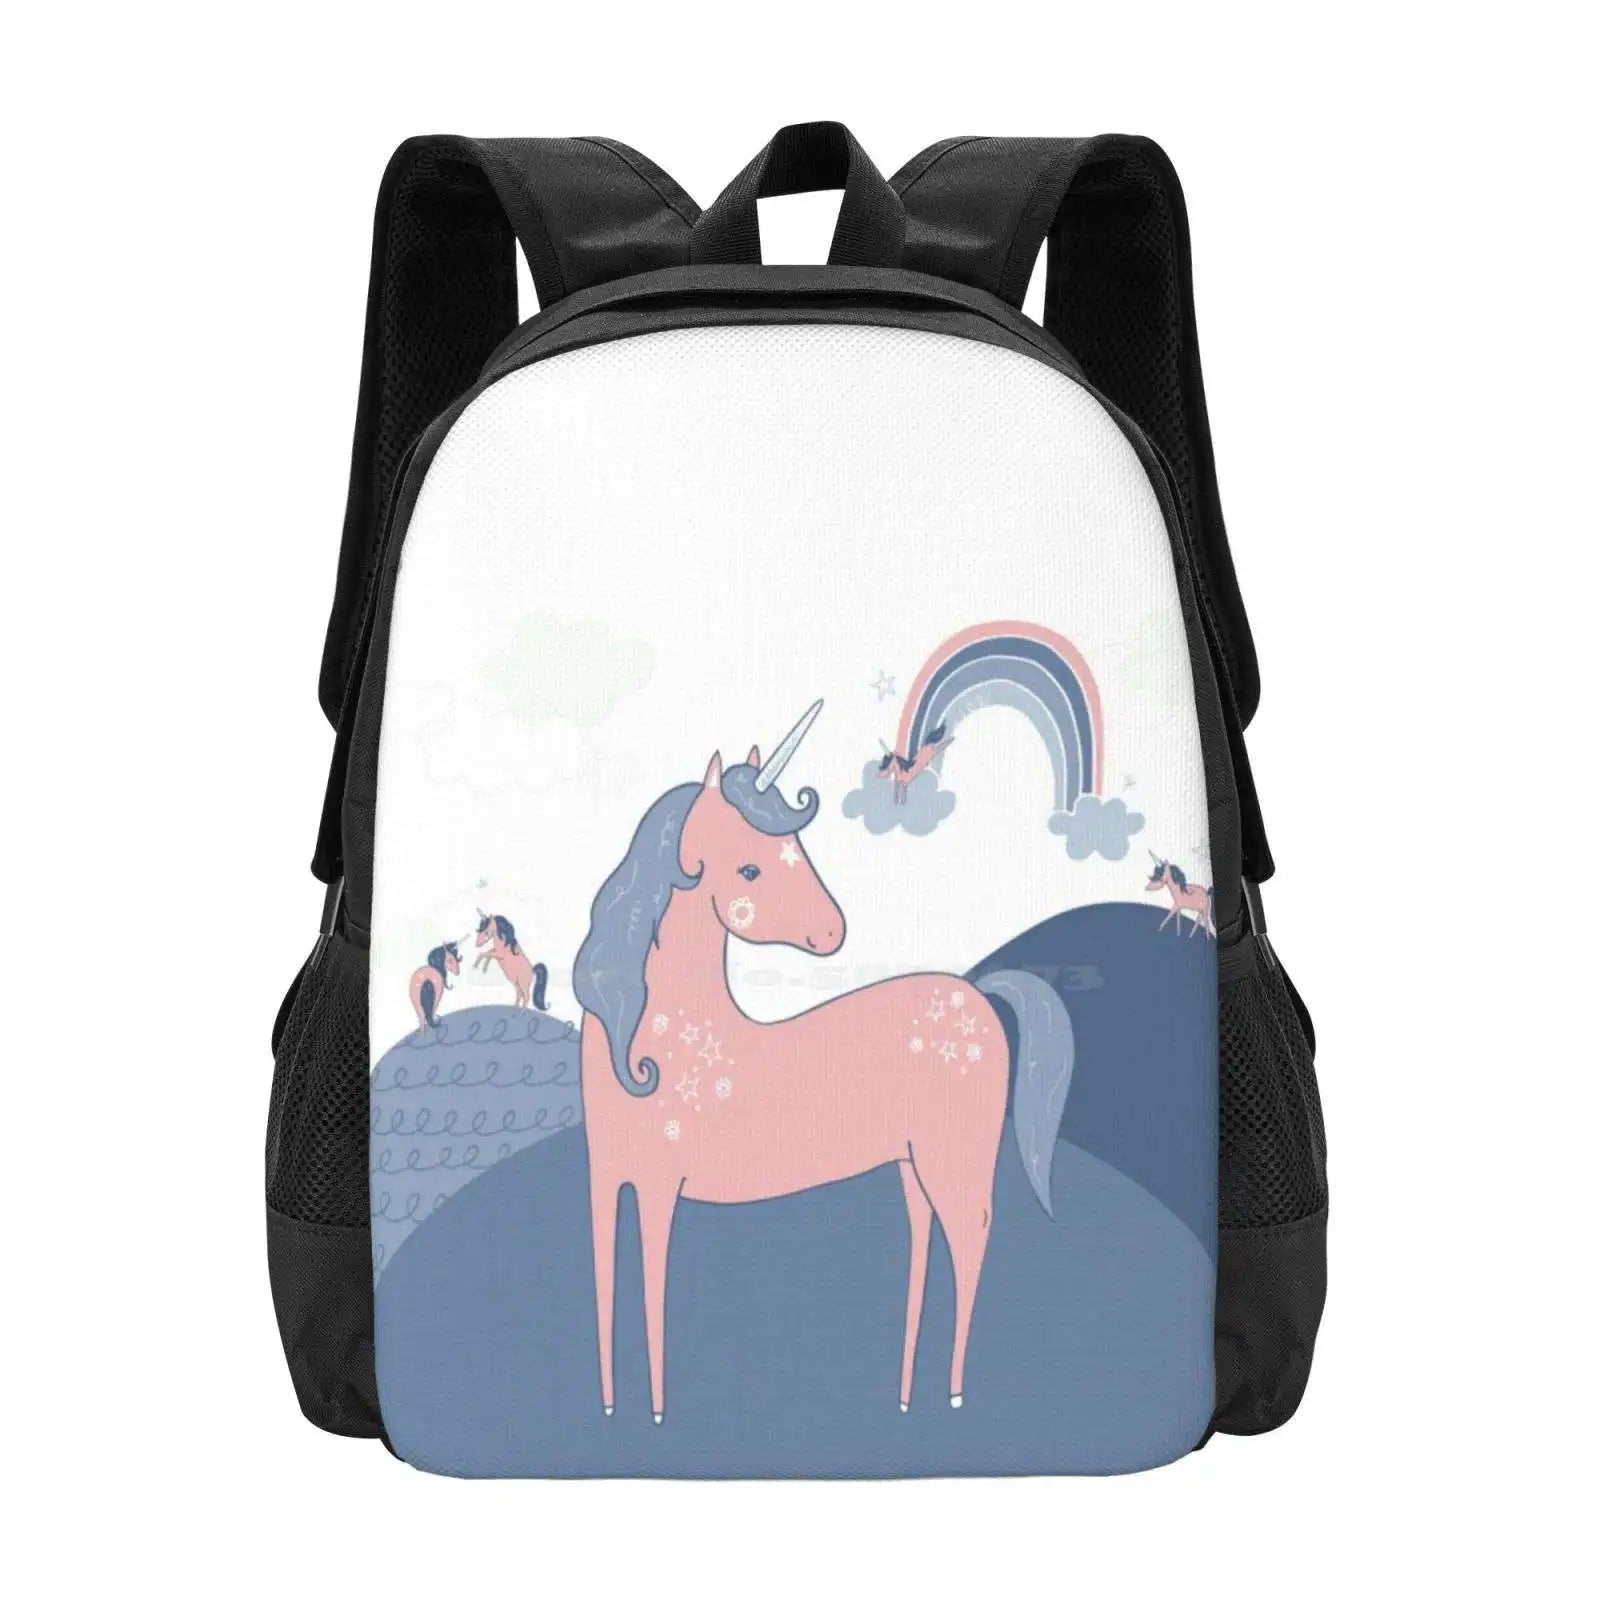 Childrens Horse Backpack - Backpack - Black